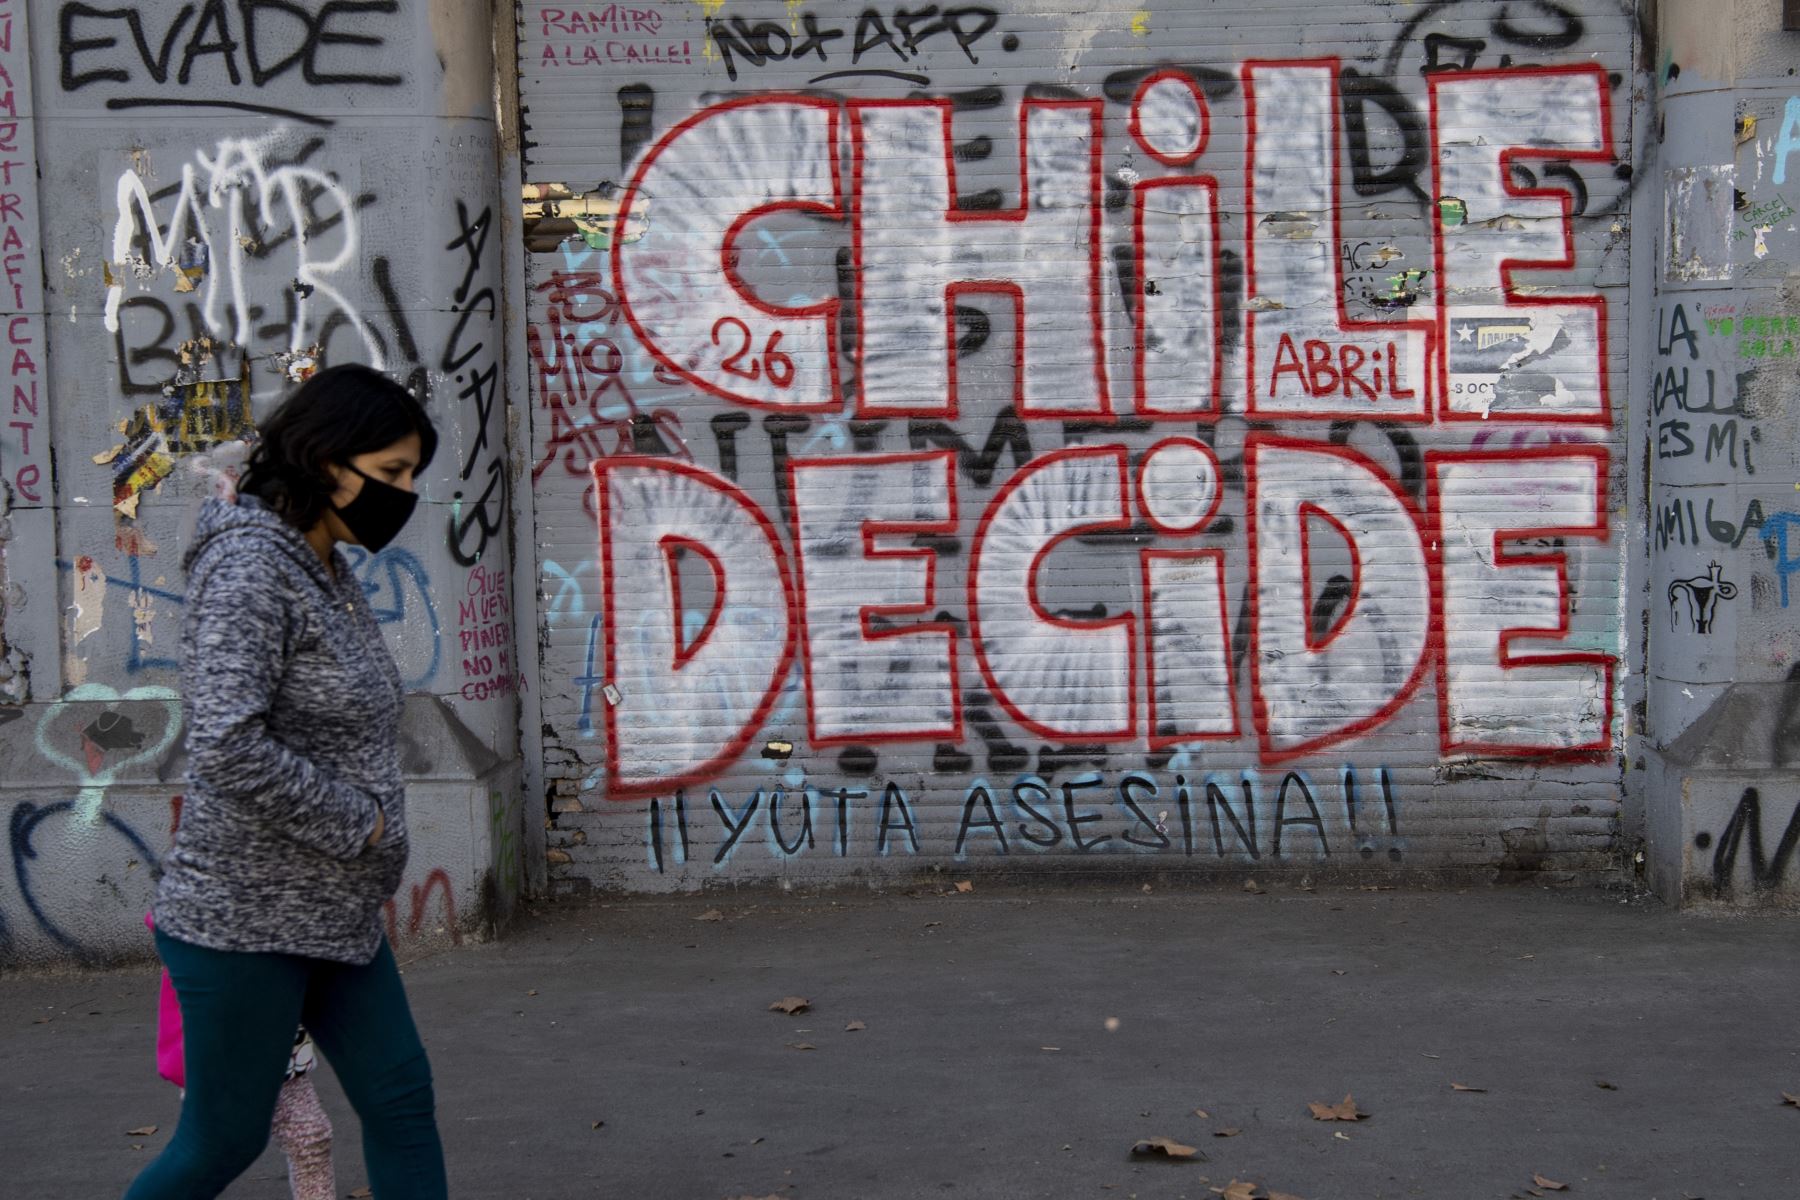 Una mujer pasa junto a un grafiti que dice "Chile decide", en referencia al referéndum del 25 de octubre para cambiar la Constitución de la era de la dictadura militar de Chile, en Santiago. Foto: AFP.